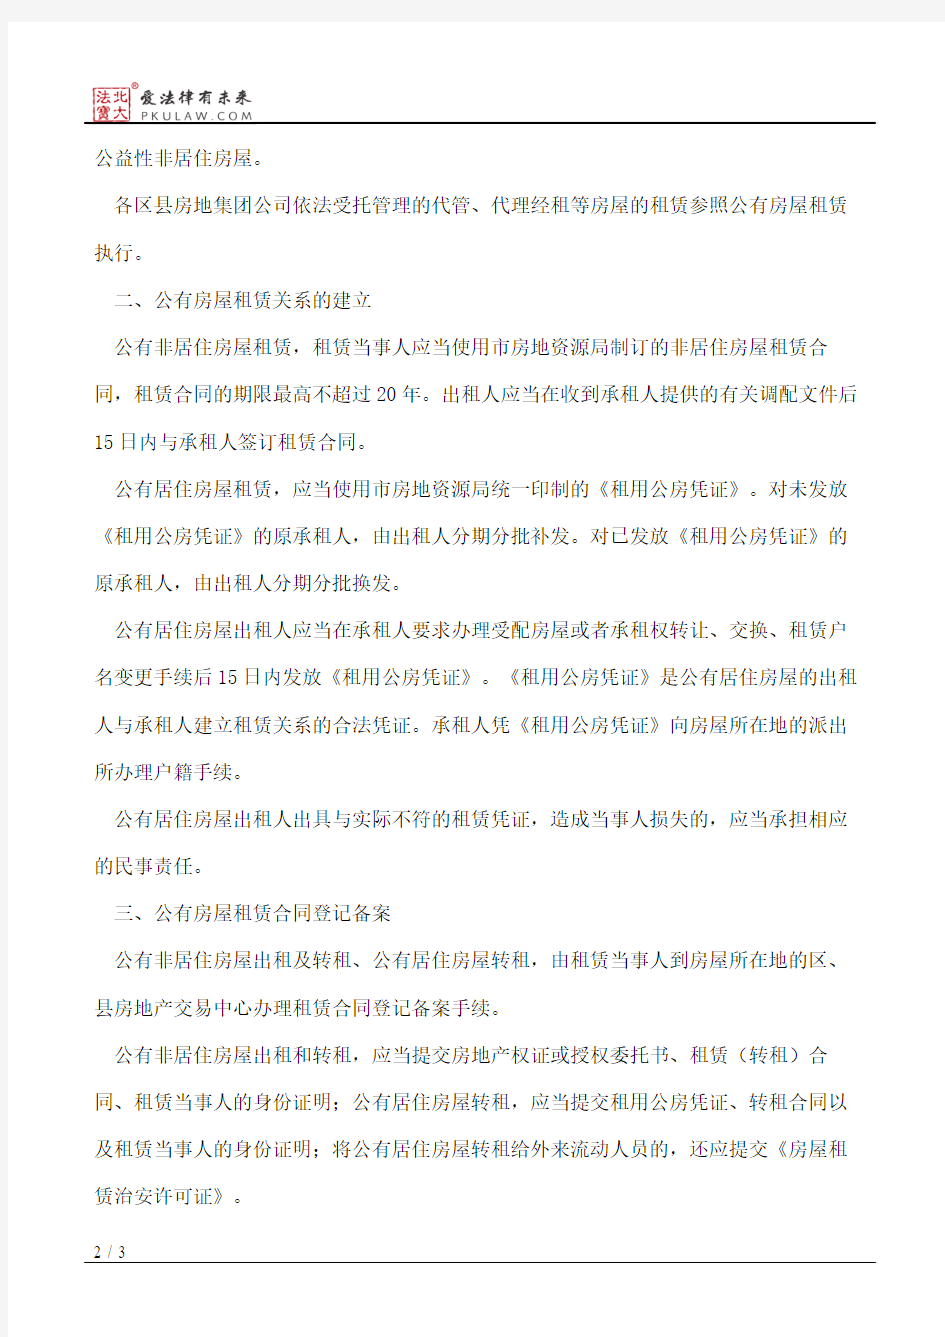 上海市房地资源局关于贯彻实施《上海市房屋租赁条例》的意见(二)